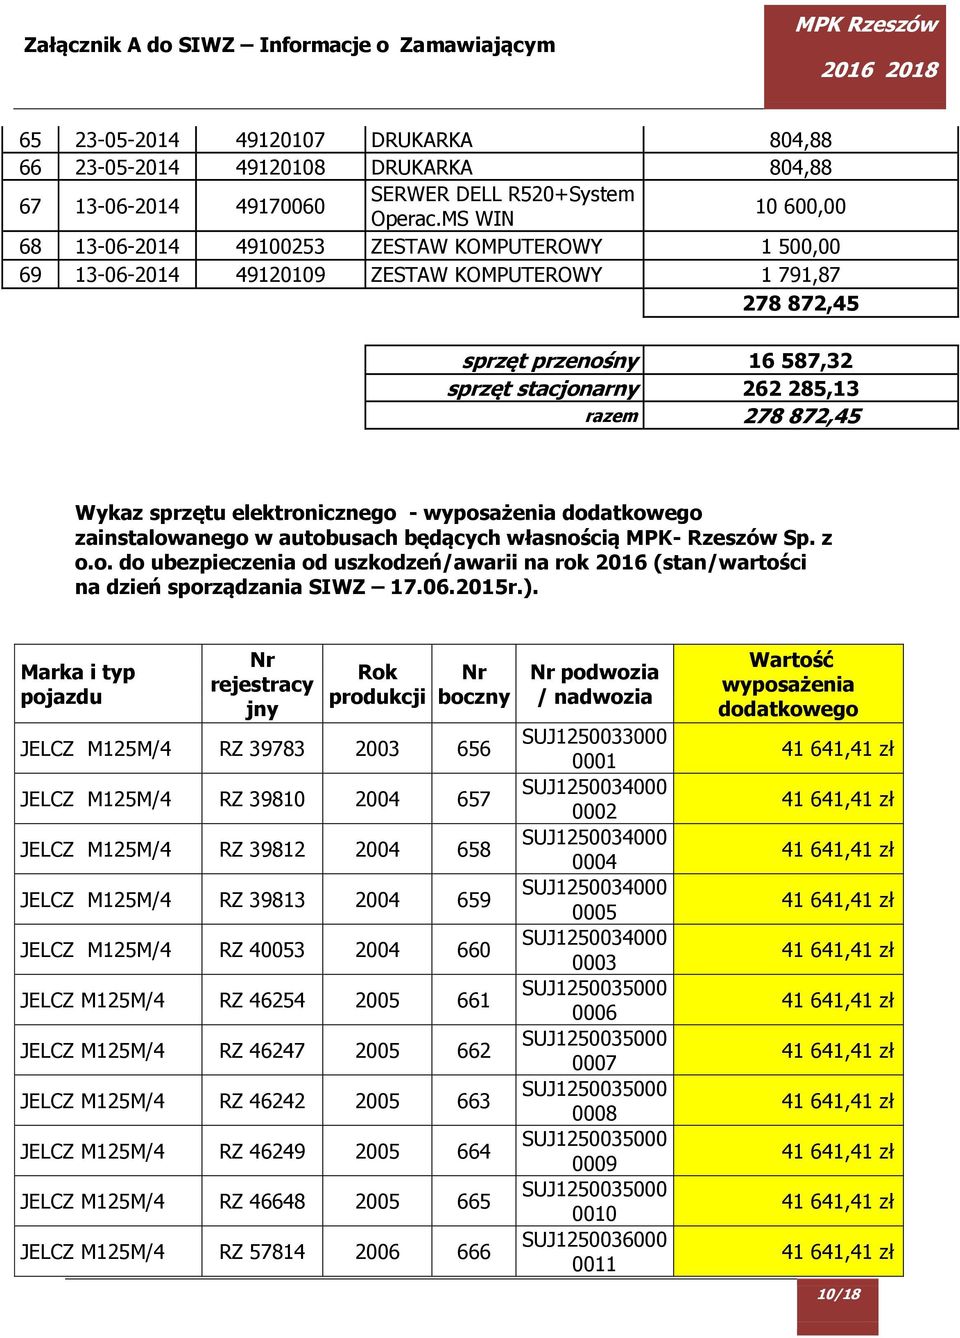 872,45 Wykaz sprzętu elektronicznego - wyposażenia dodatkowego zainstalowanego w autobusach będących własnością MPK- Rzeszów Sp. z o.o. do ubezpieczenia od uszkodzeń/awarii na rok 2016 (stan/wartości na dzień sporządzania SIWZ 17.